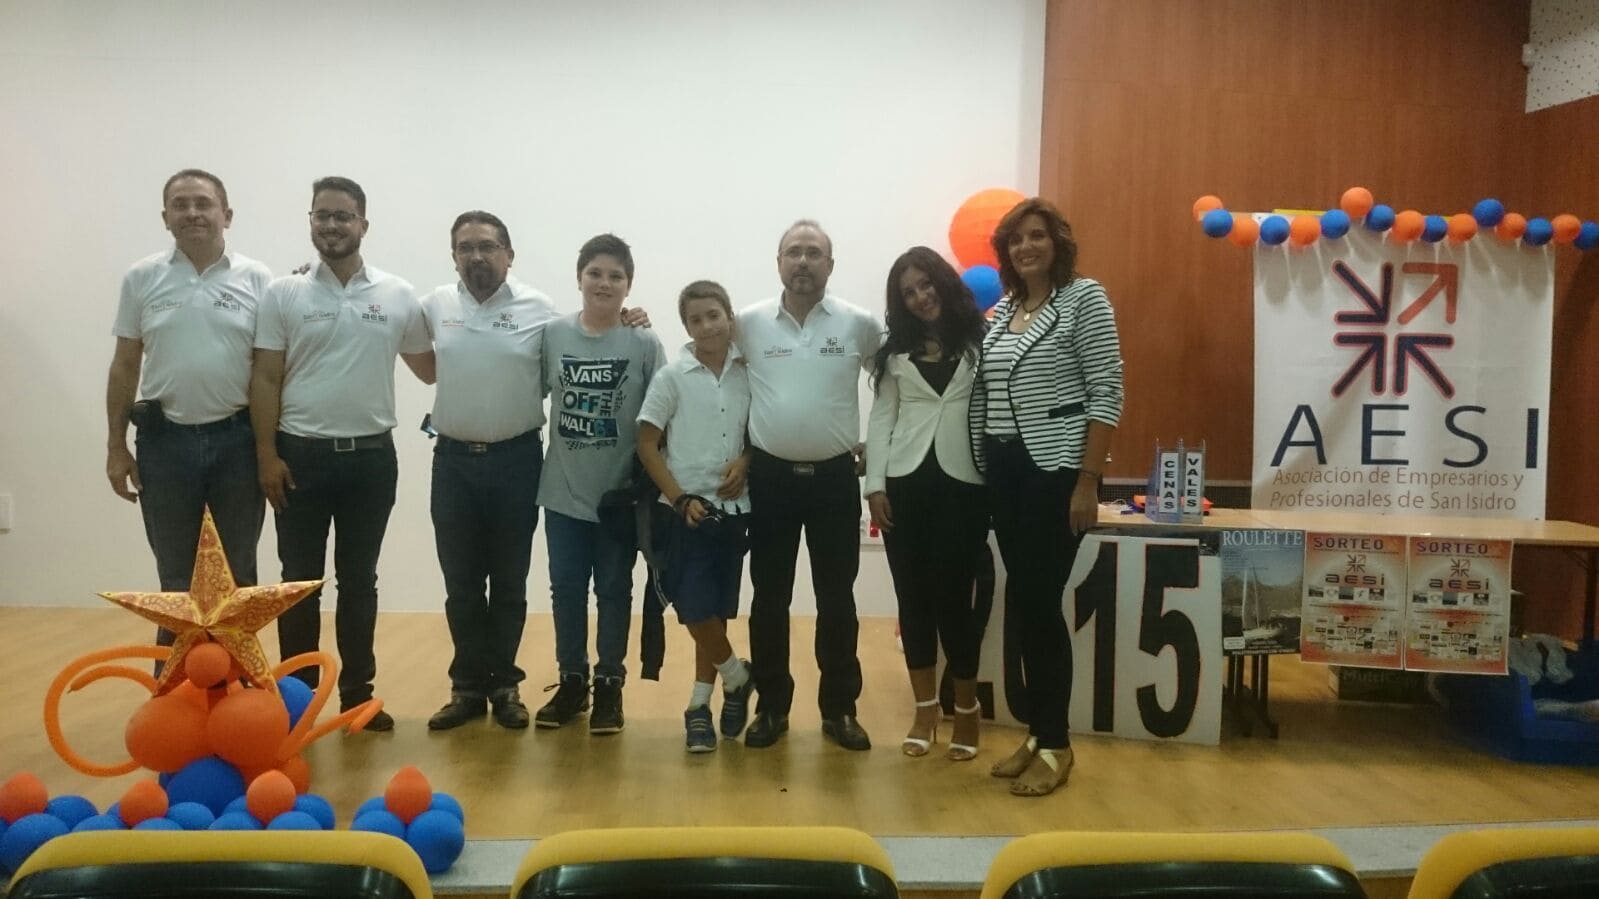 La Asociación de Empresarios de San Isidro hizo entrega de sus premios anuales